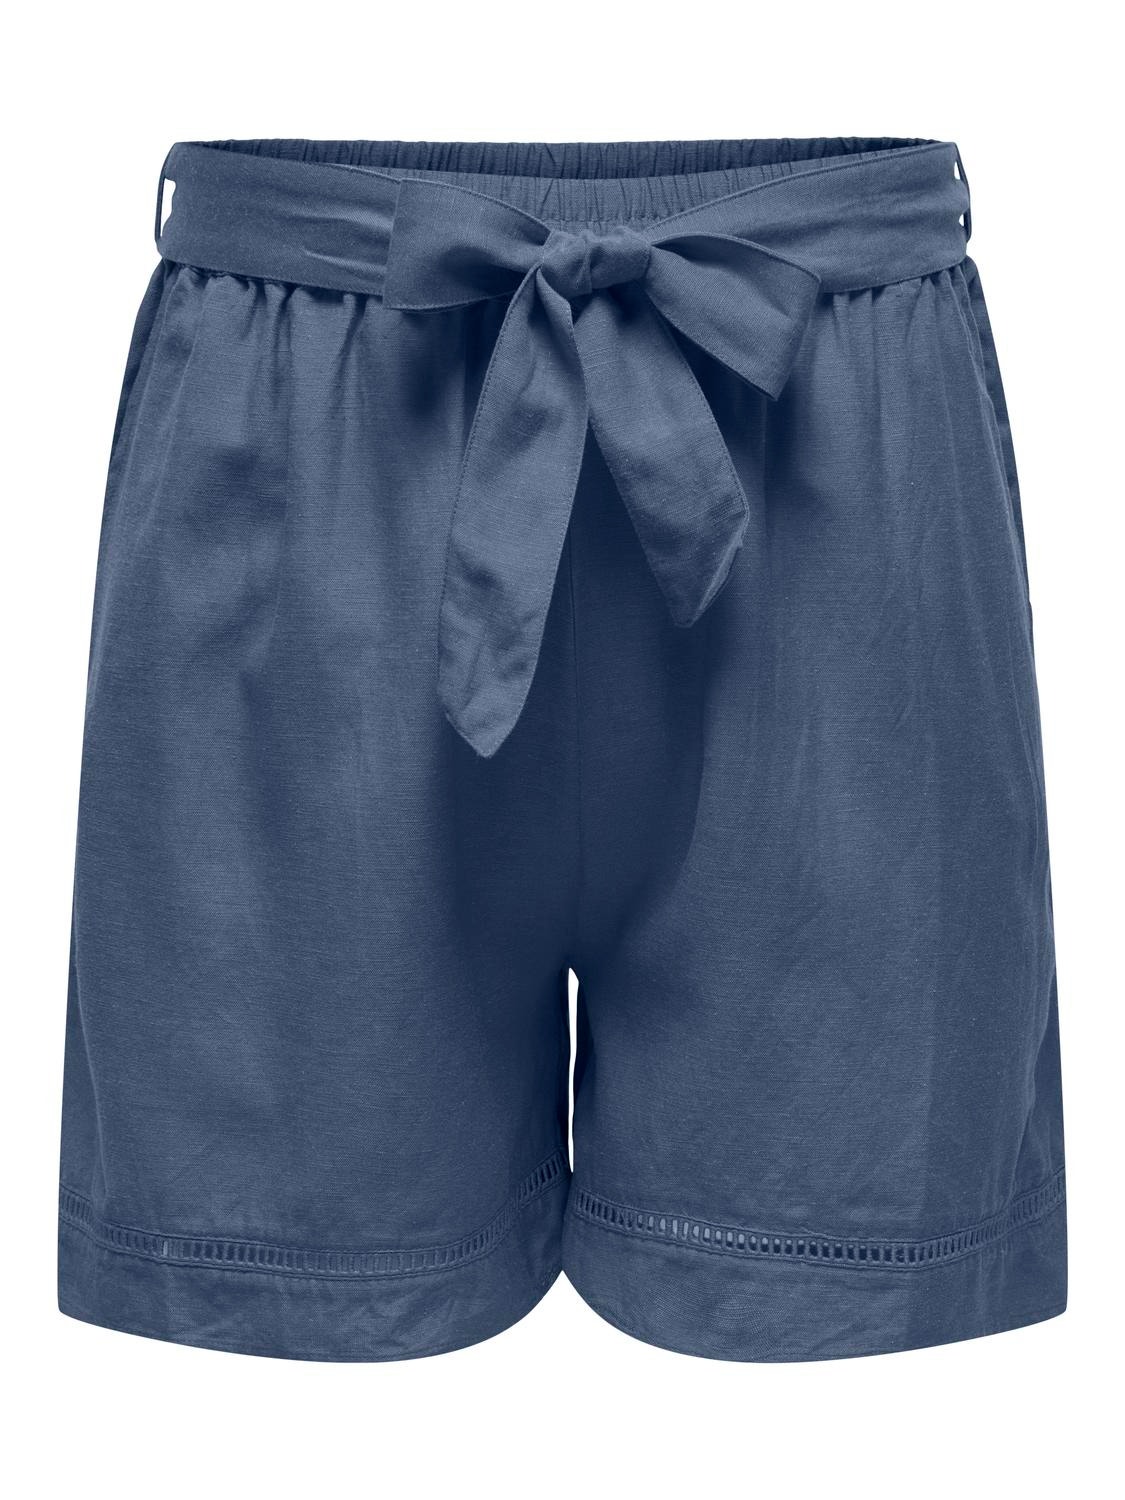 ONLY Loose fit Middels høy midje Shorts -Vintage Indigo - 15320532